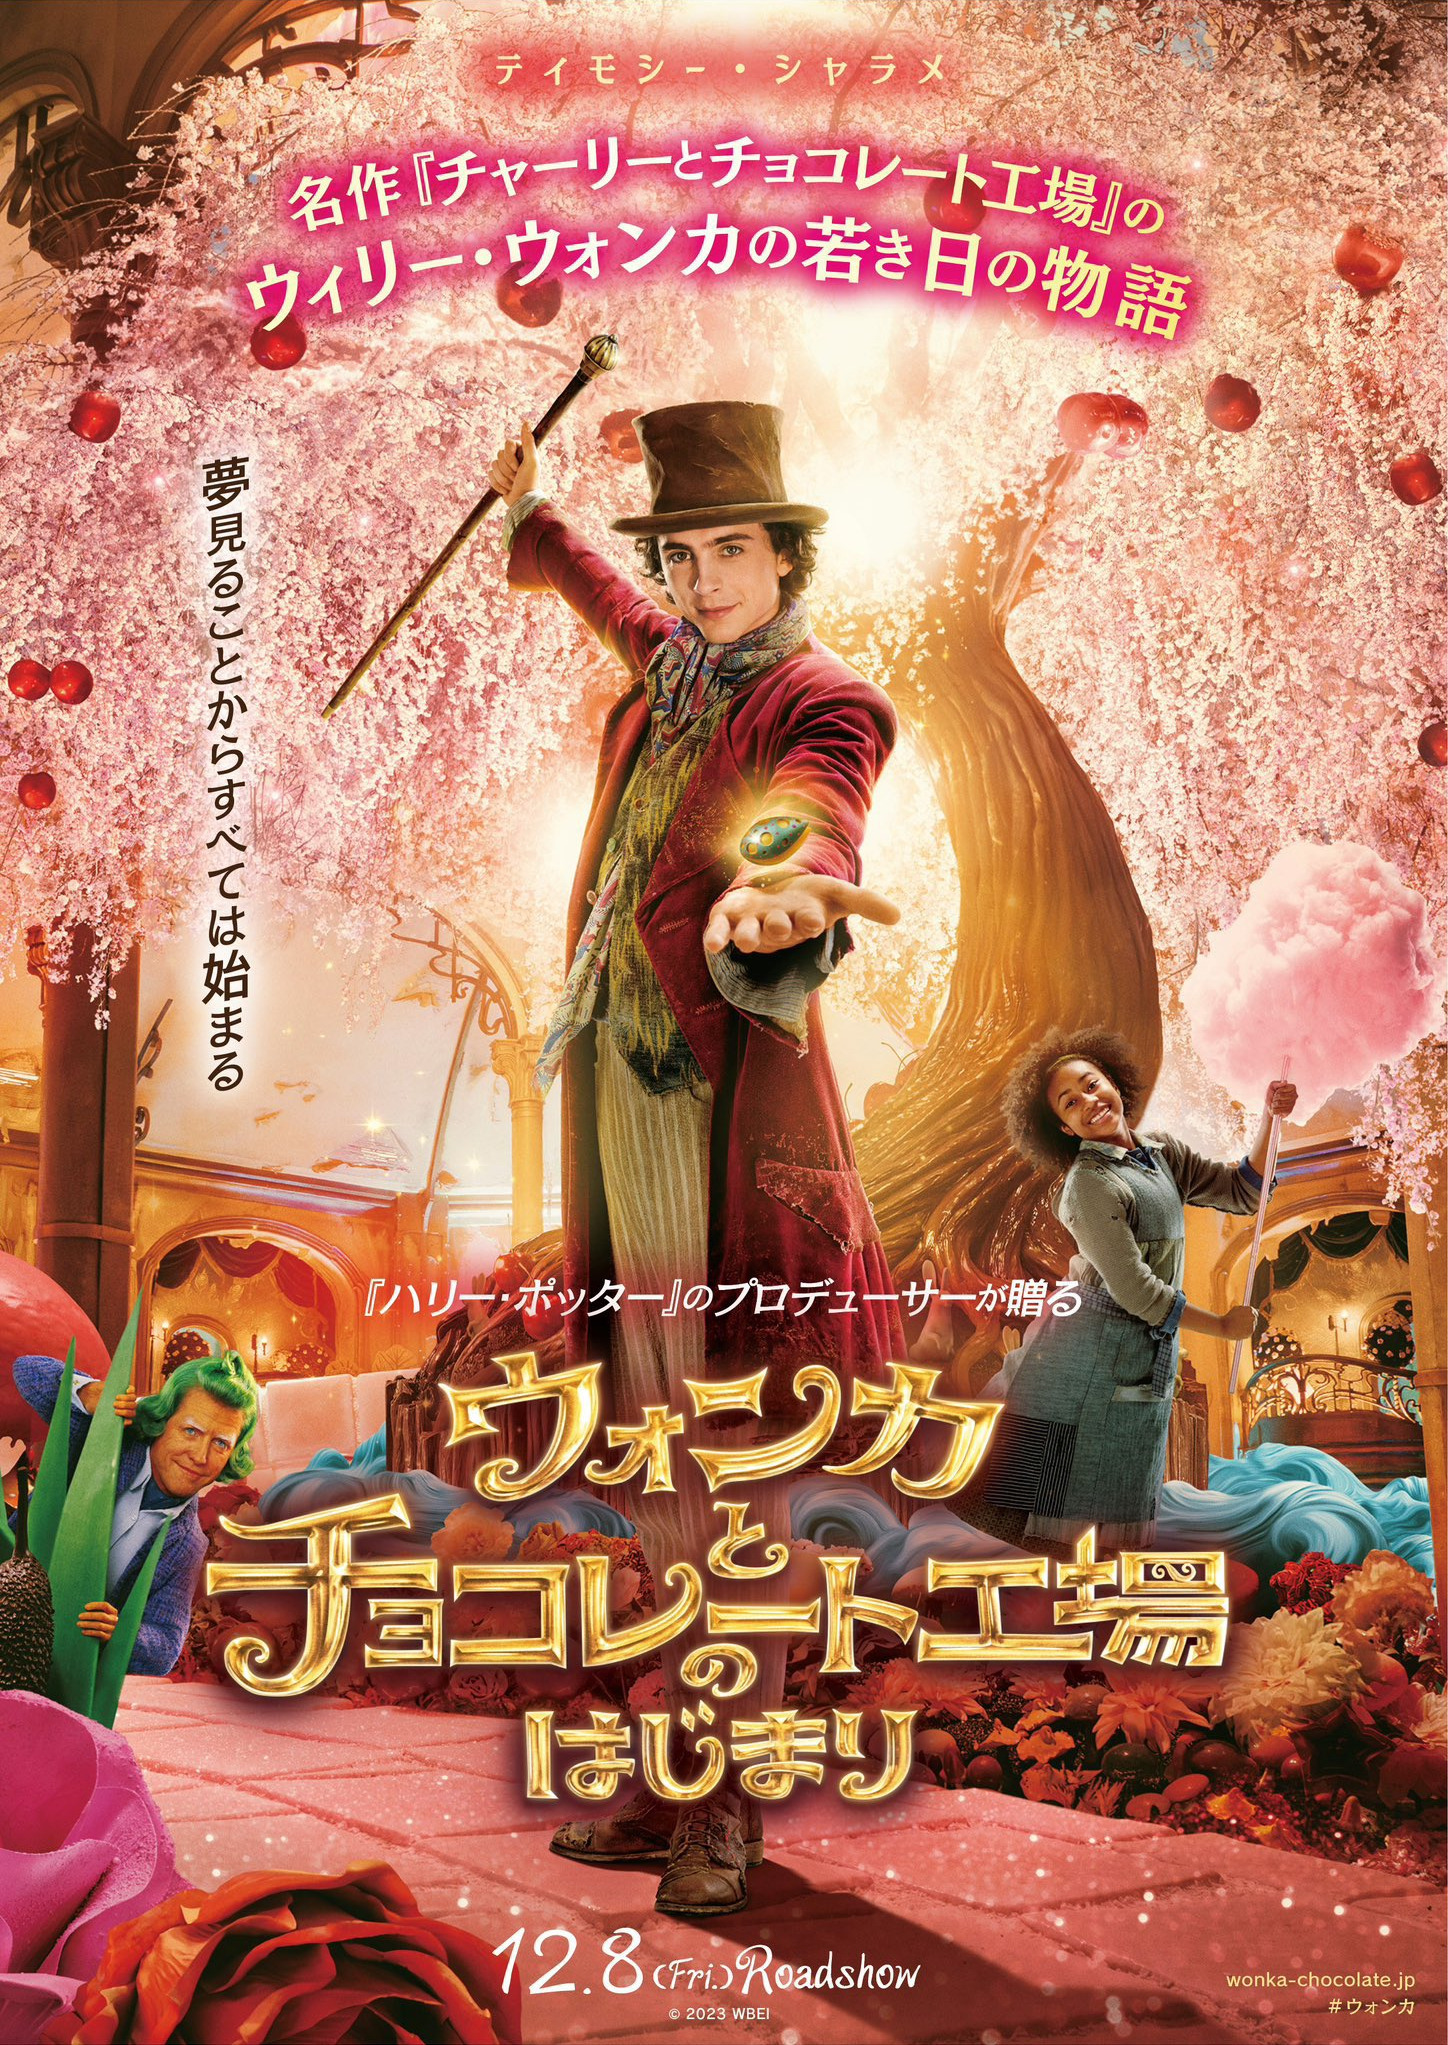 Mega Sized Movie Poster Image for Wonka (#16 of 22)